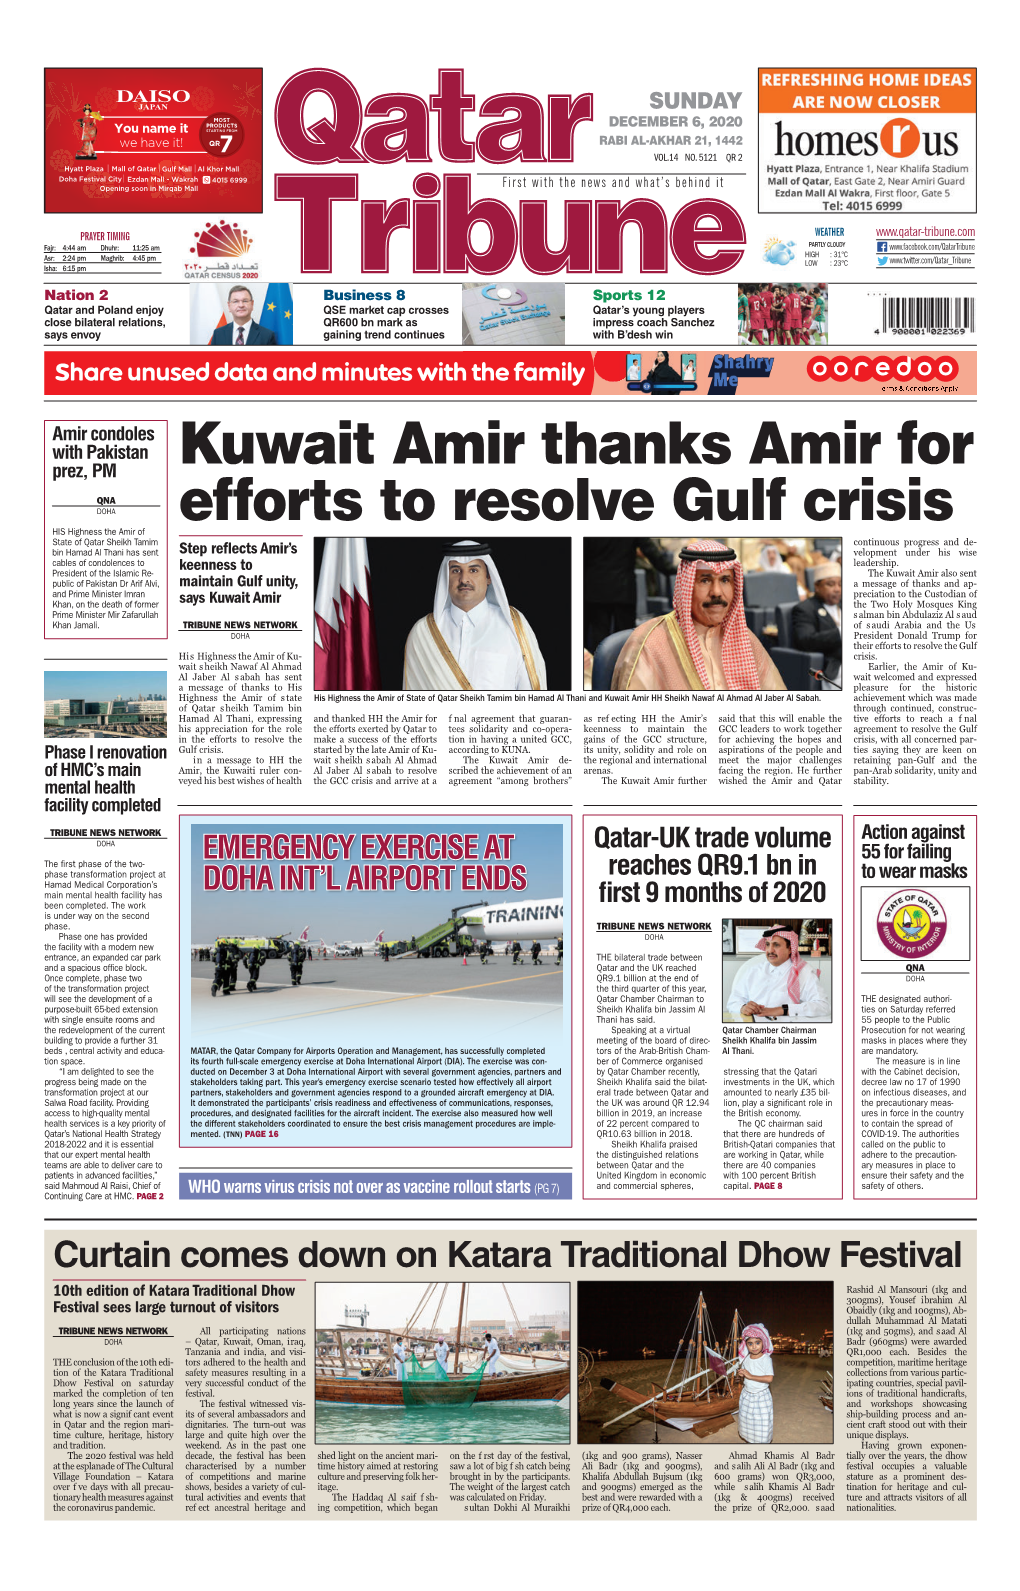 Kuwait Amir Thanks Amir for Efforts to Resolve Gulf Crisis